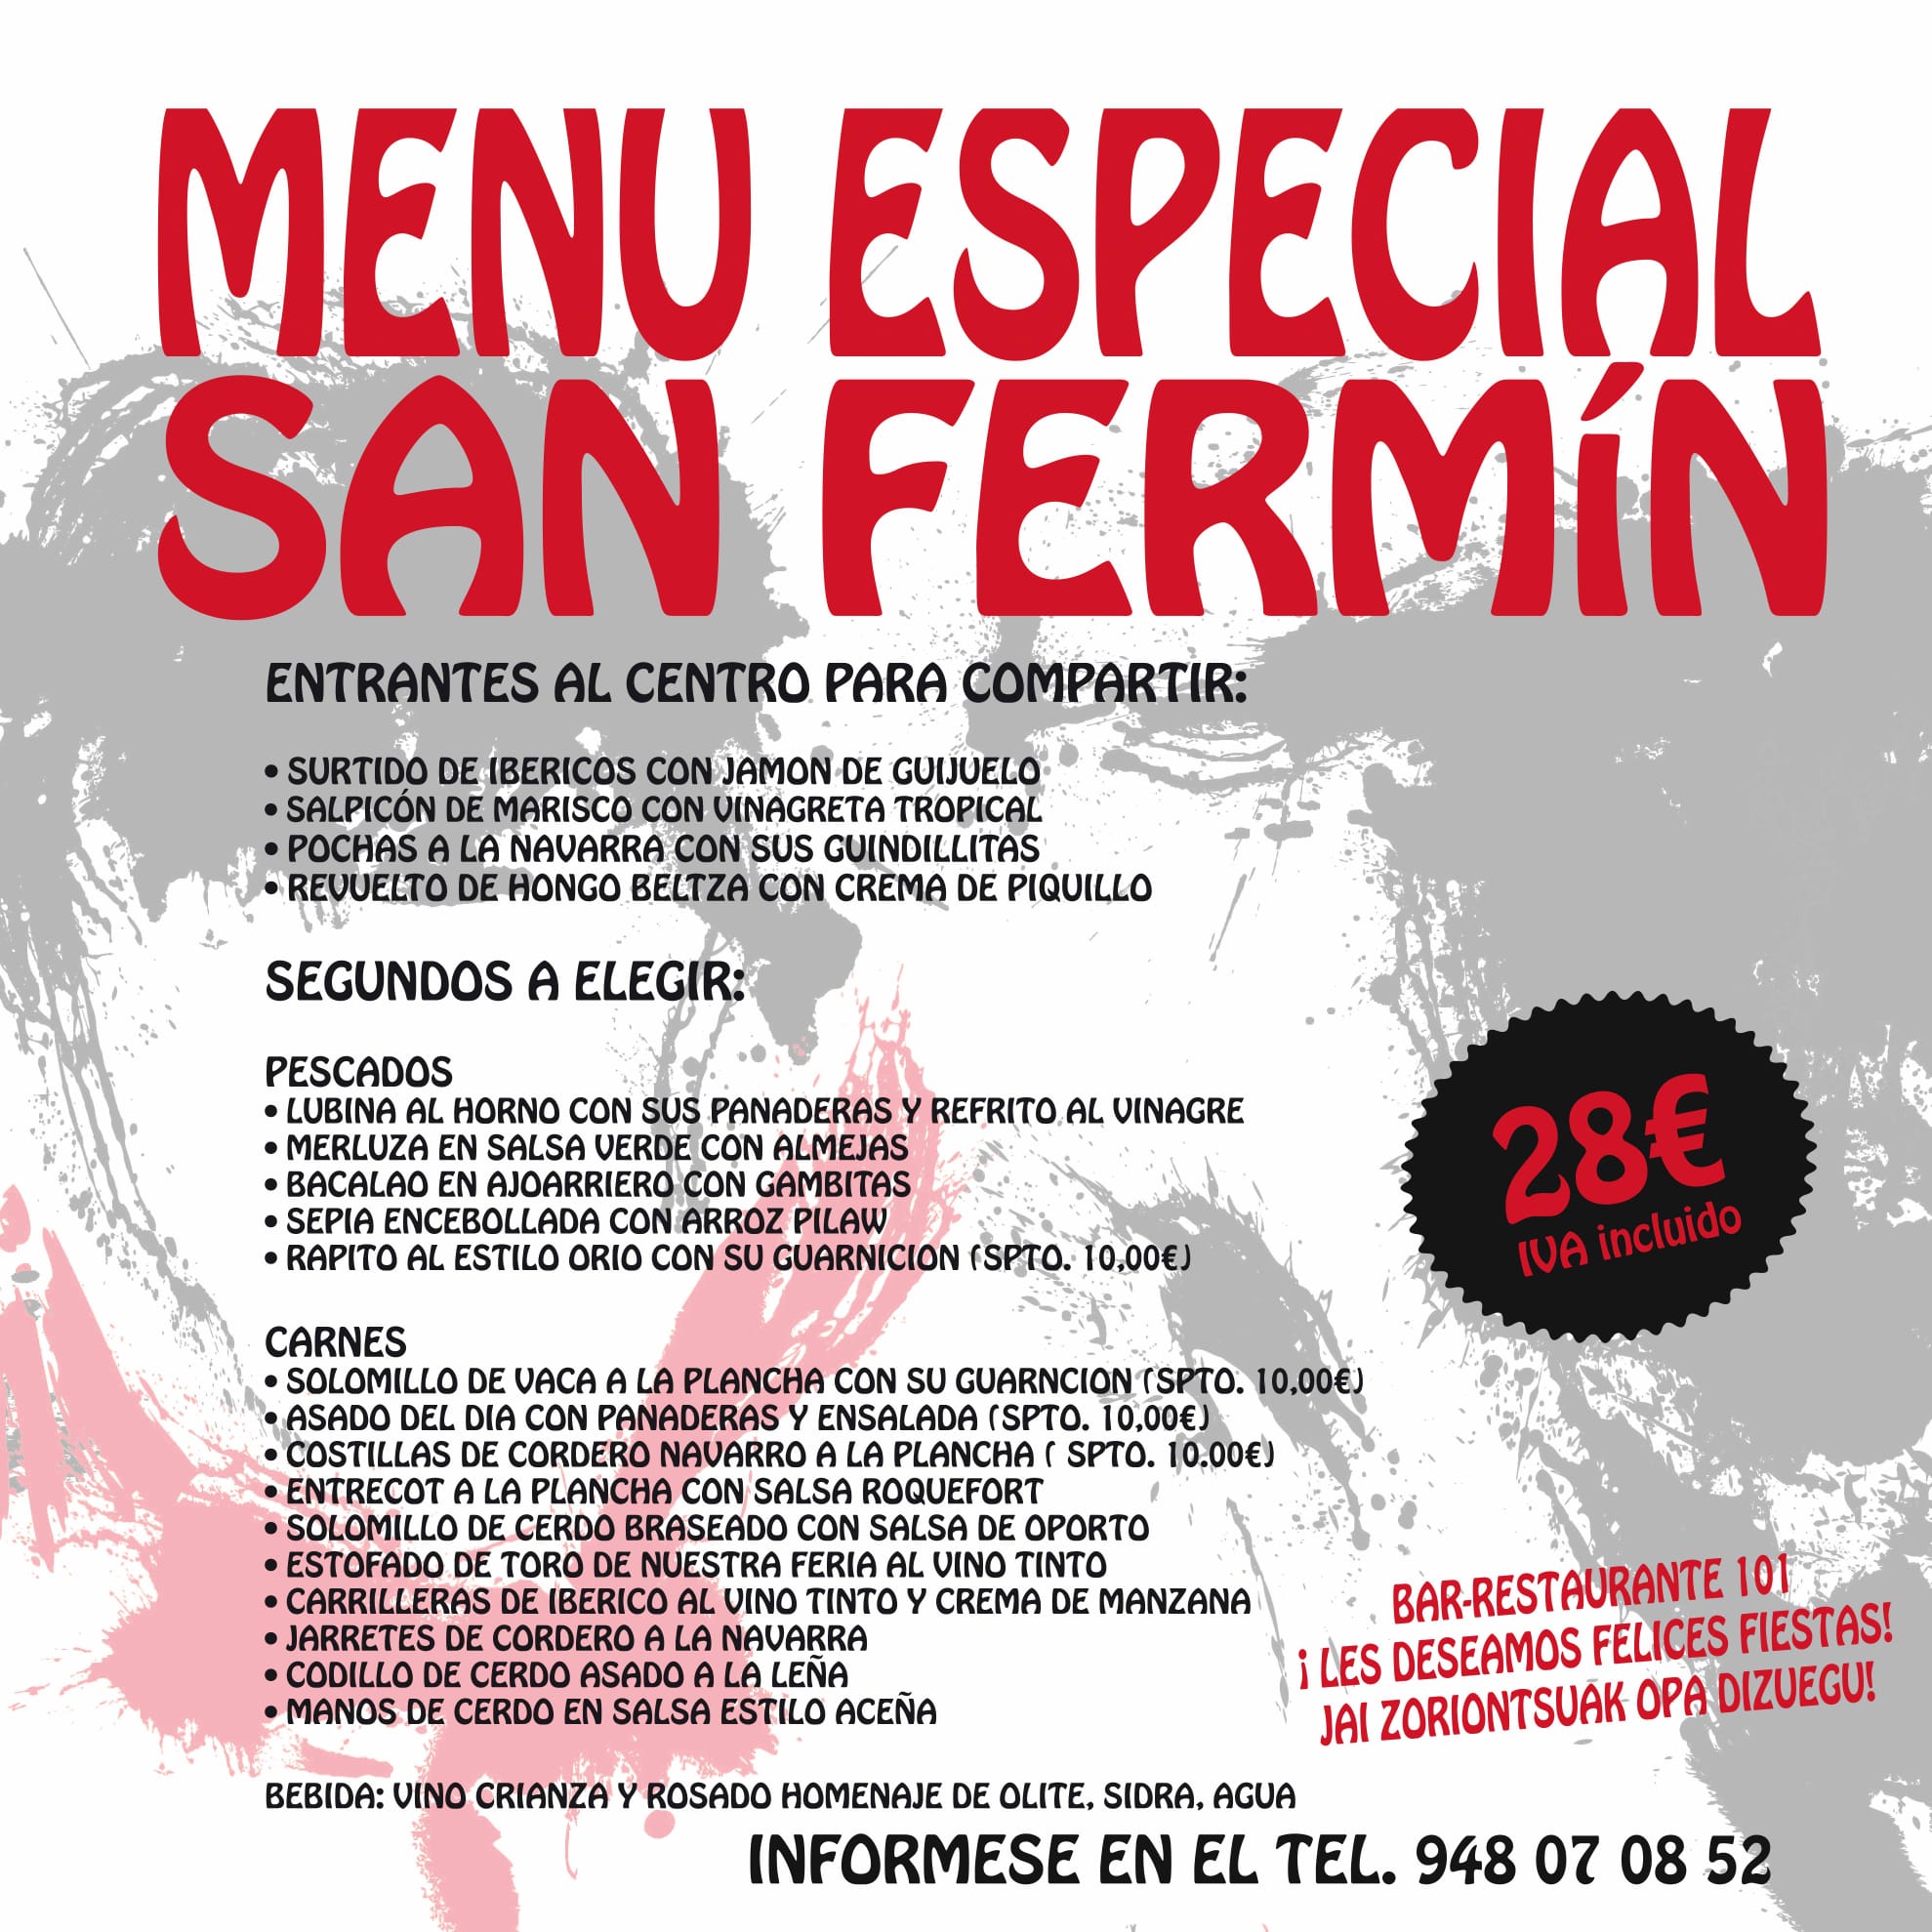 Almuercico y Menú de San Fermín Restaurante 101